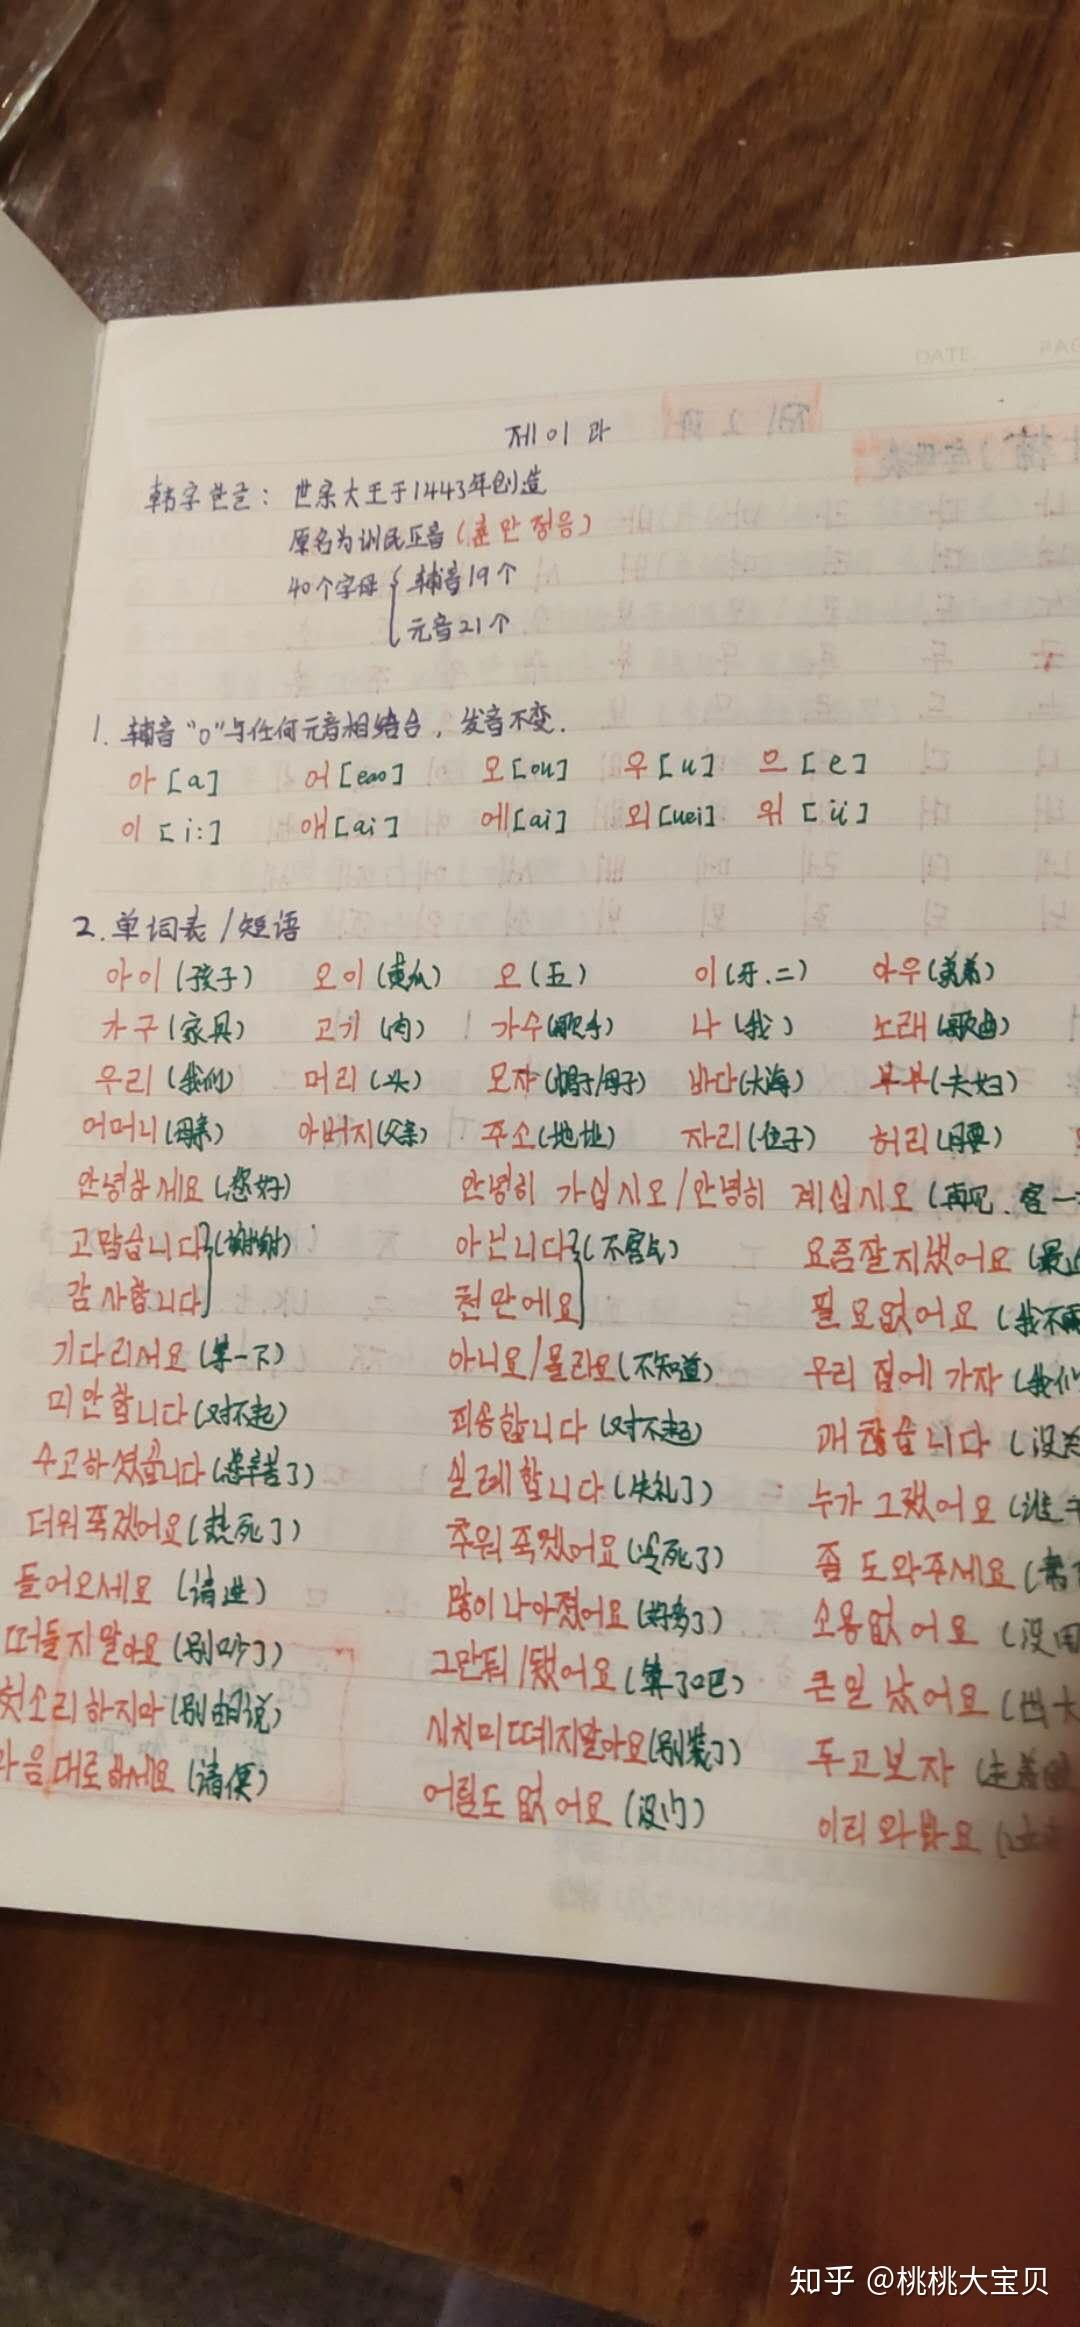 最后附上一些我自己学习韩语做的笔记,因为已经过高级啦没什么用了